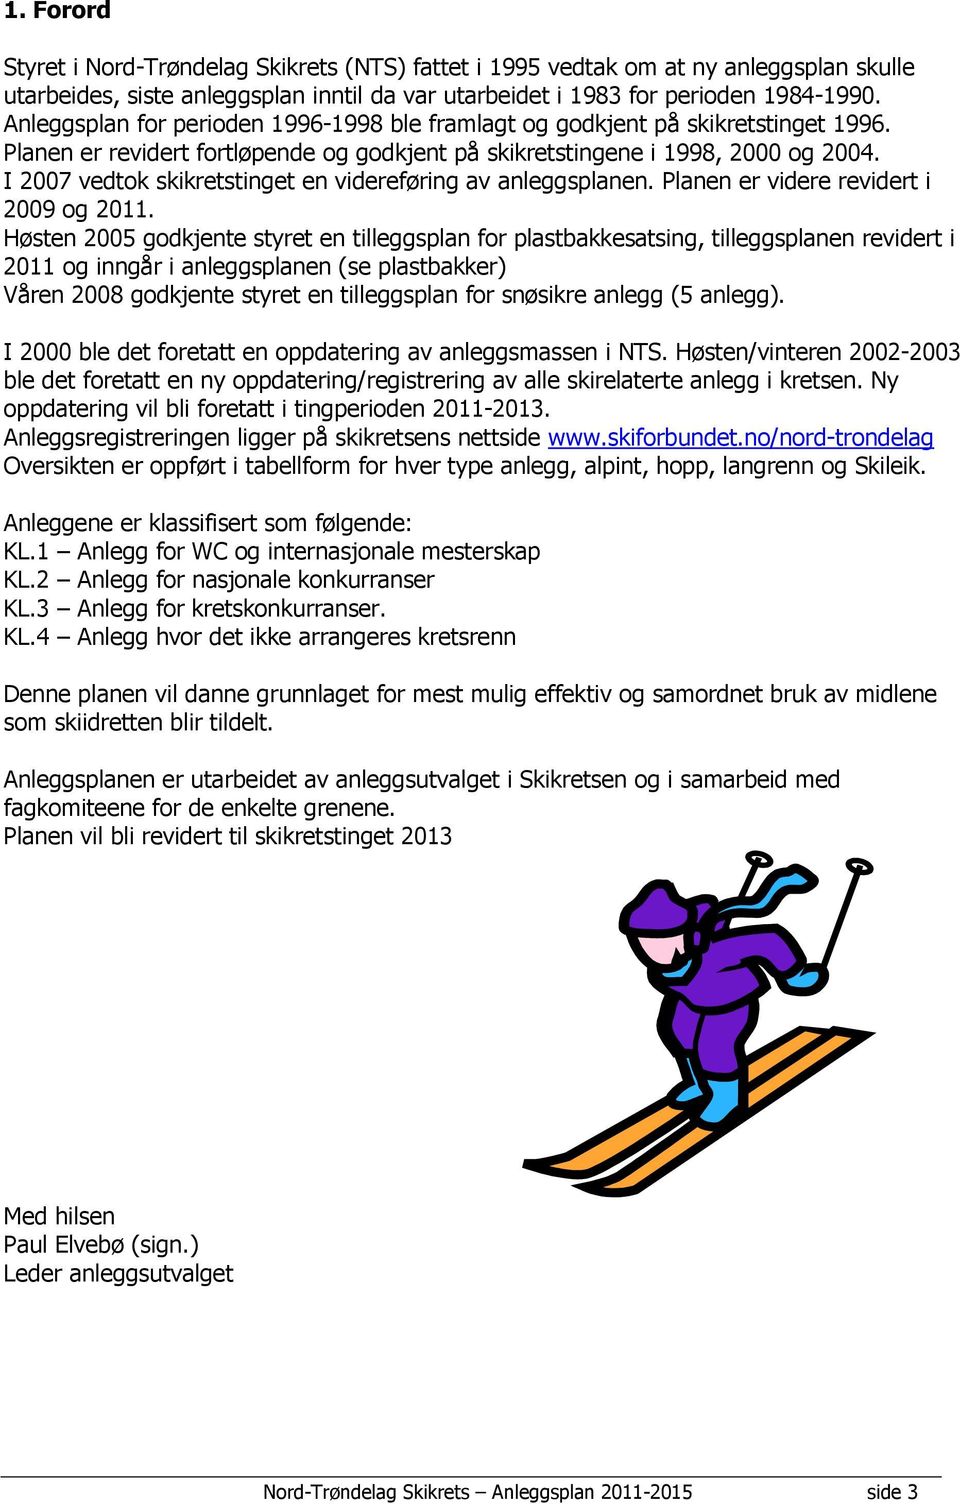 I 2007 vedtok skikretstinget en videreføring av anleggsplanen. Planen er videre revidert i 2009 og 2011.